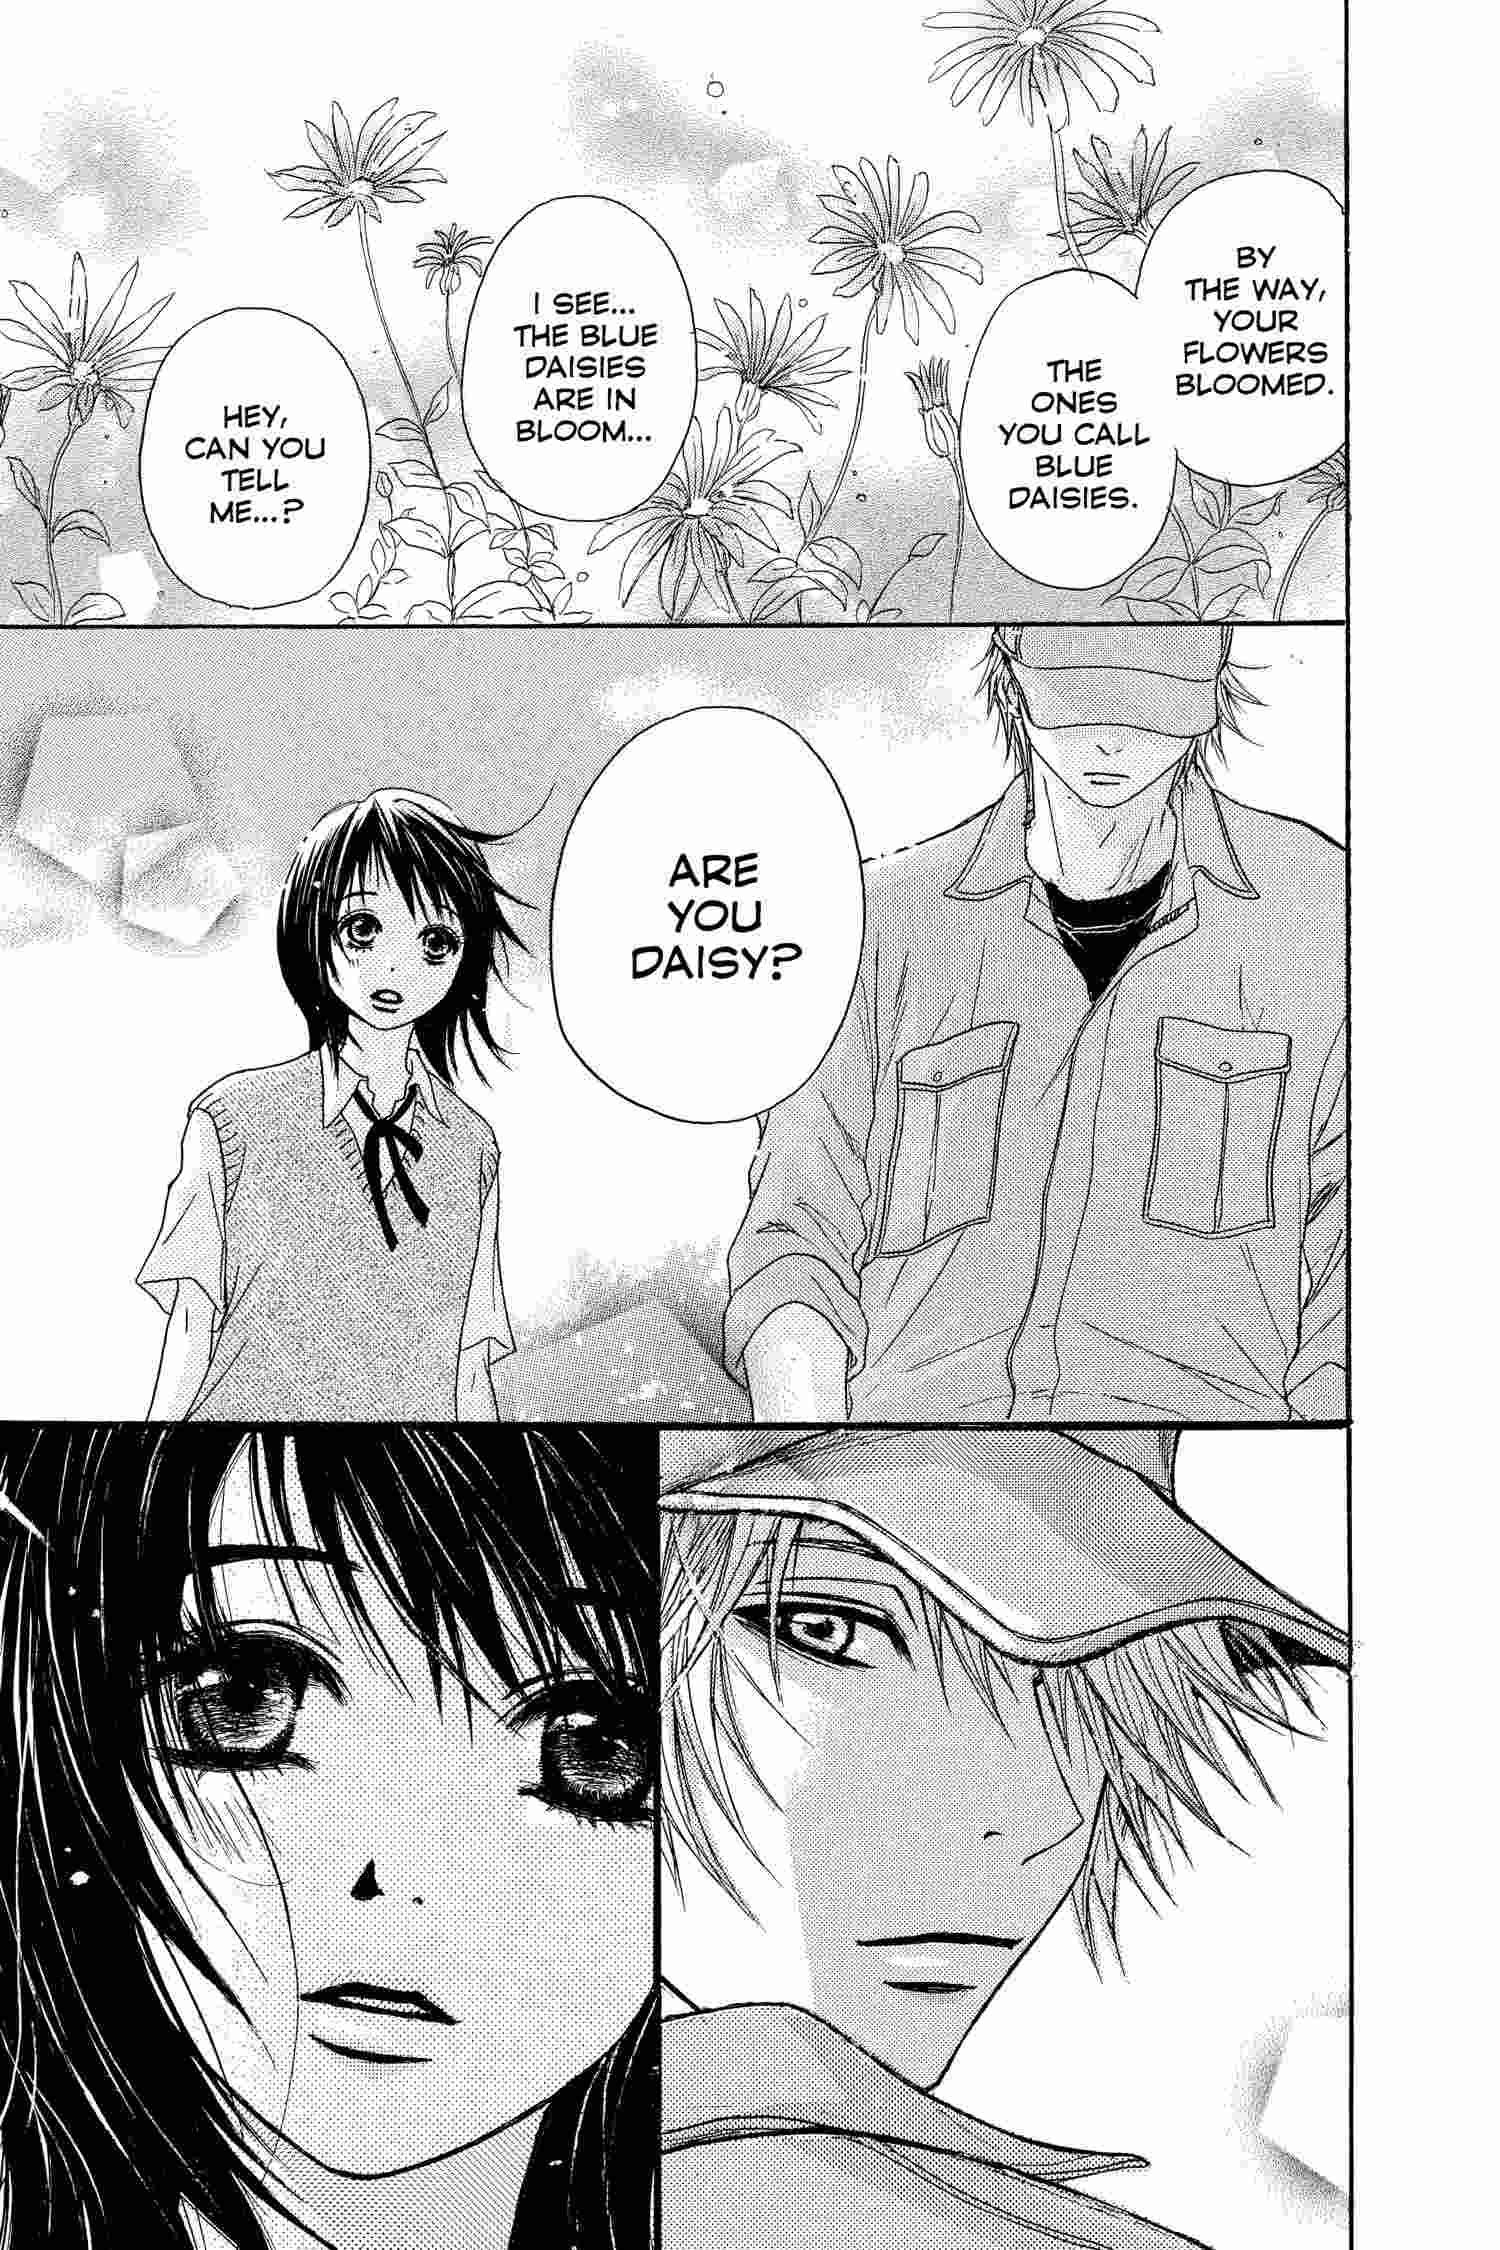 Manga nice romance 21 Best